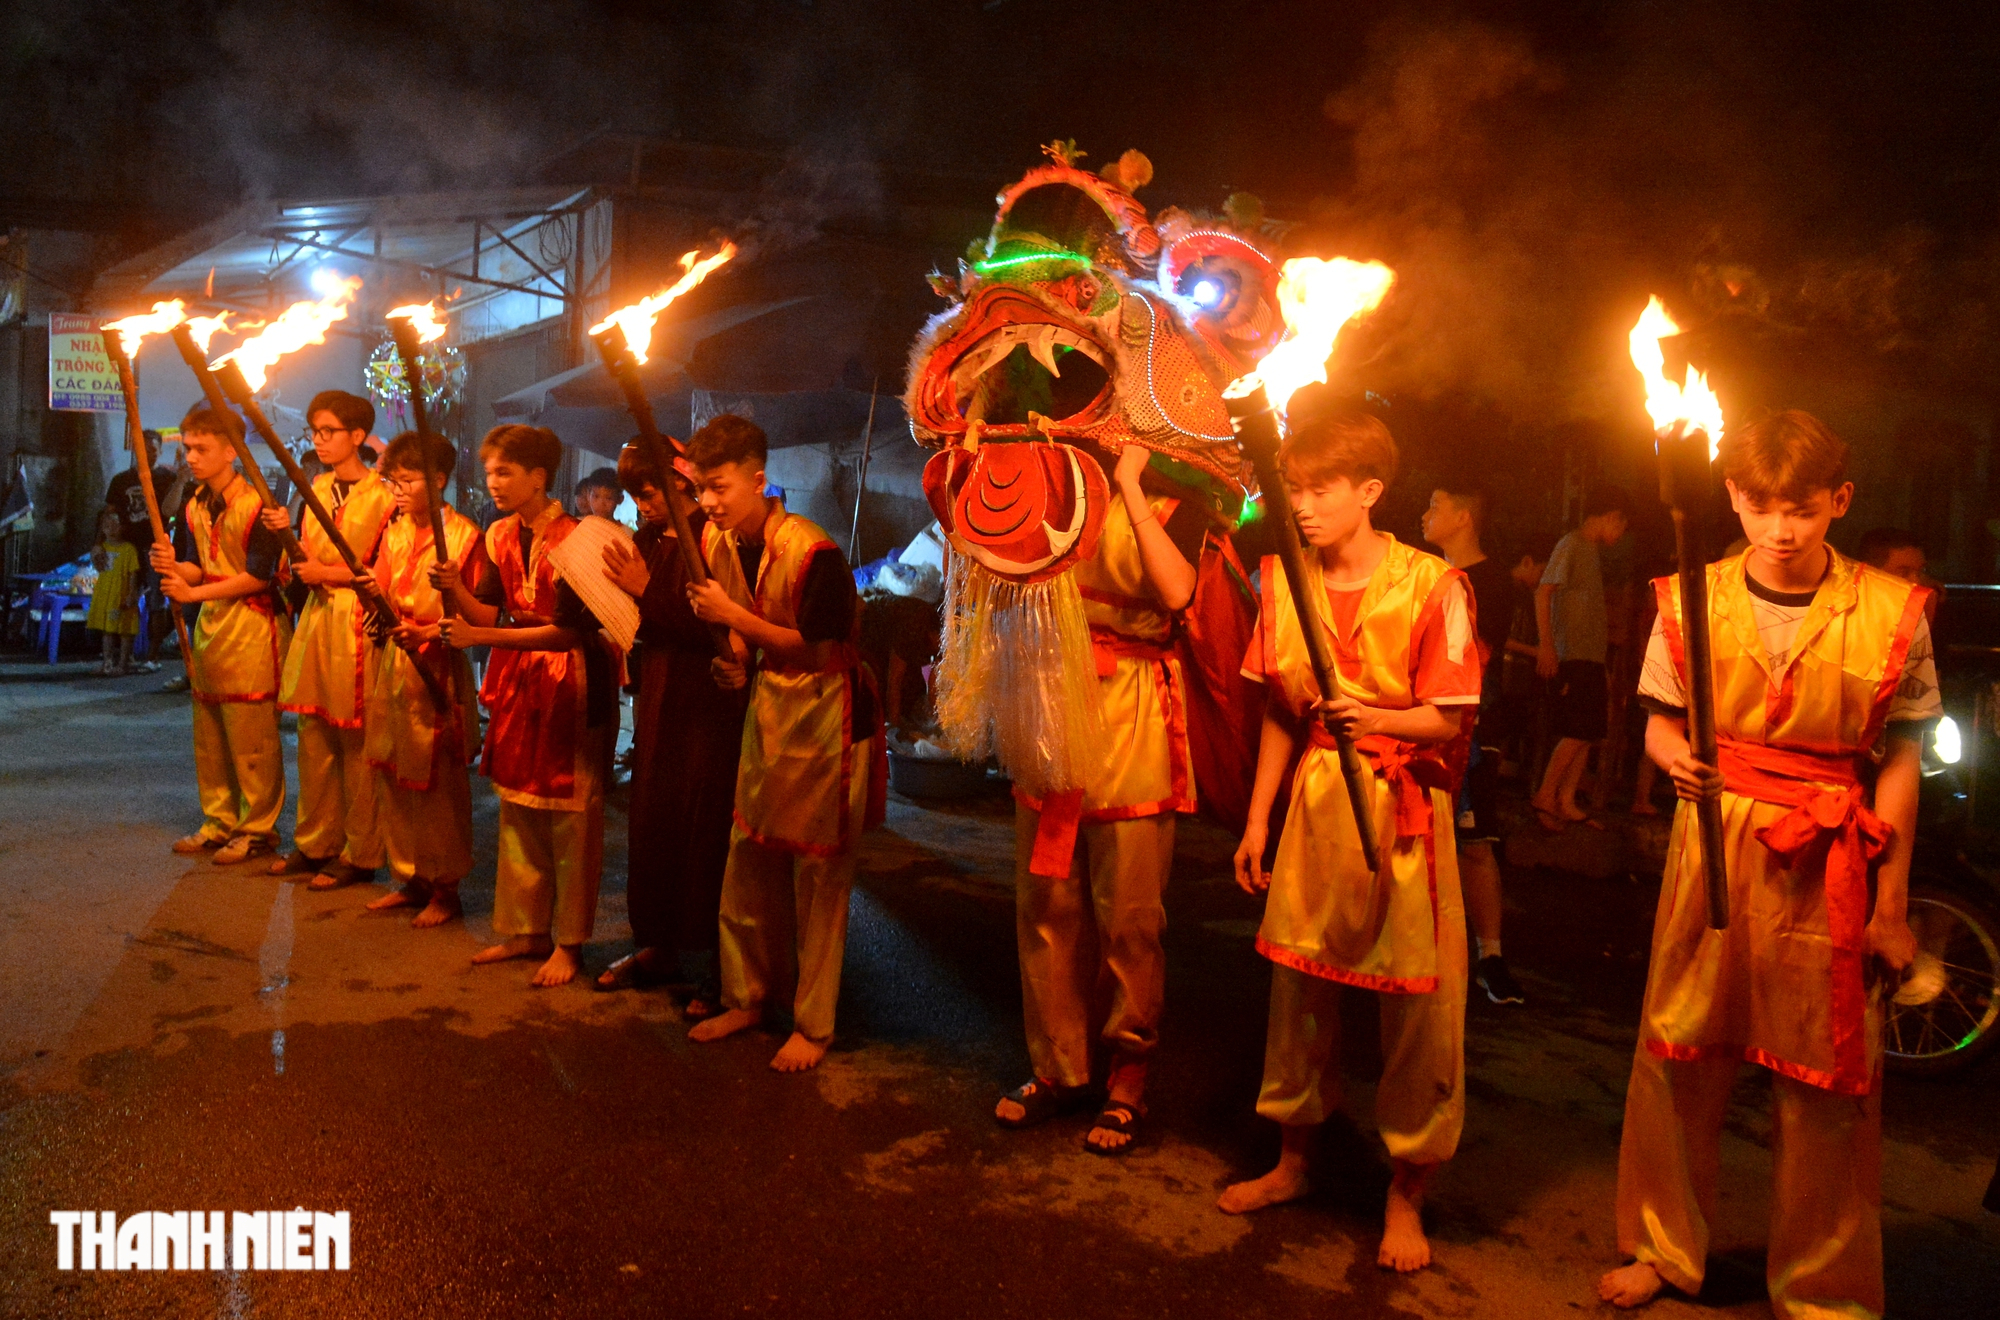 Trai làng múa lân, biểu diễn phun lửa trong đêm trung thu ở ngoại thành Hà Nội - Ảnh 2.